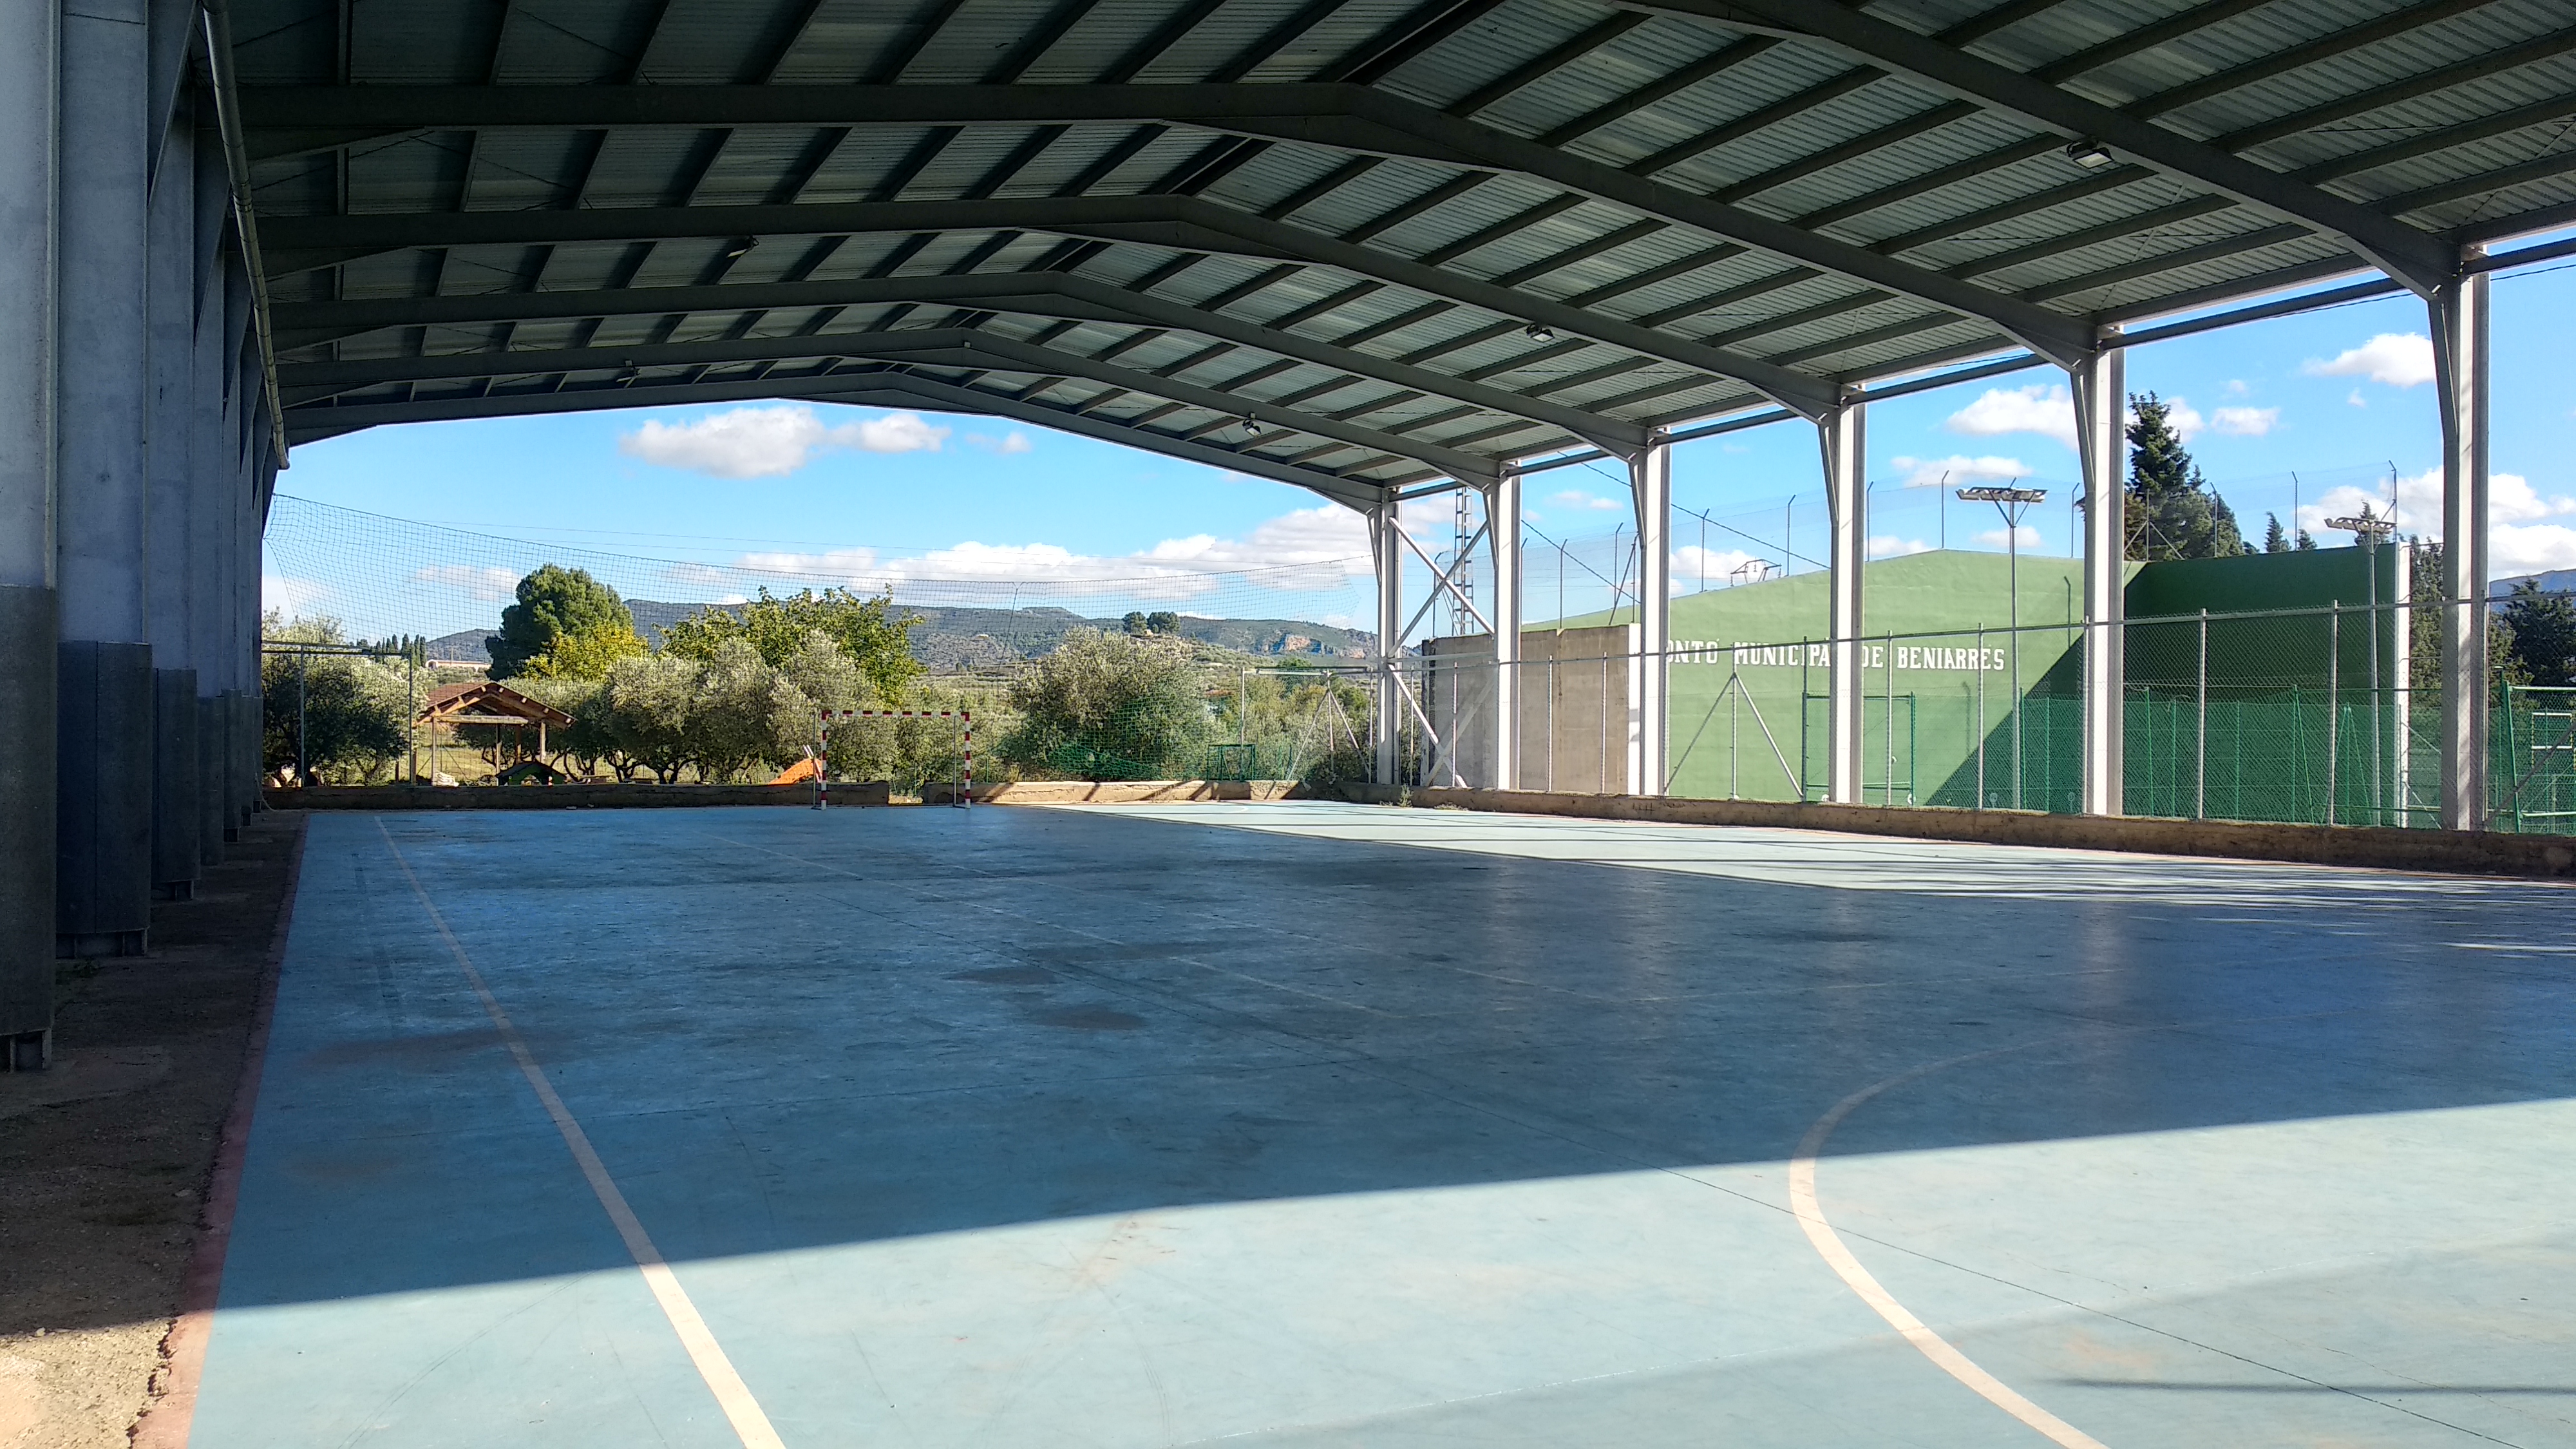 Polideportivo municipal de Beniarrés